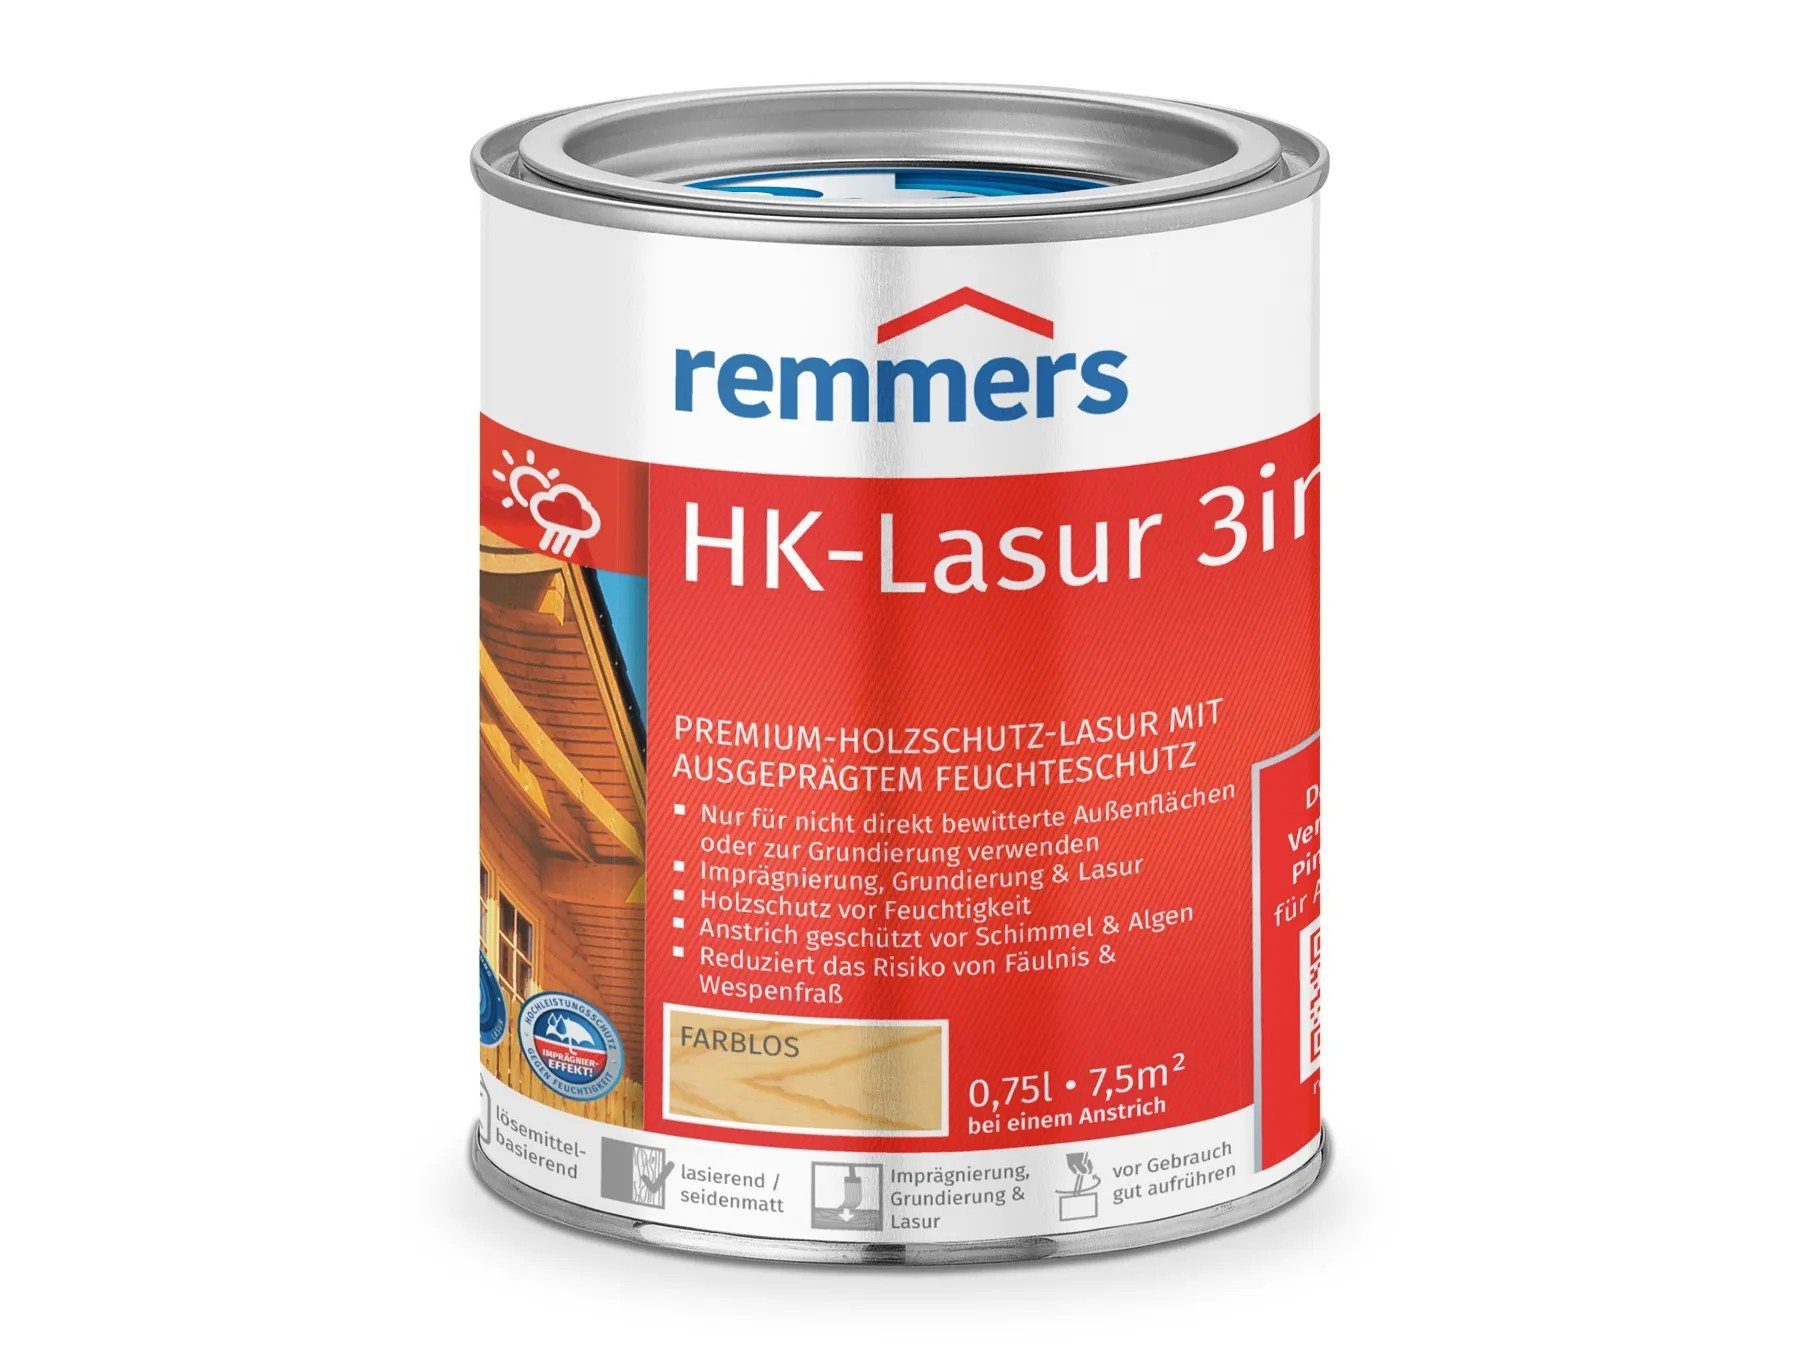 Remmers HK-Lasur 3in1 farblos Holzschutzlasur